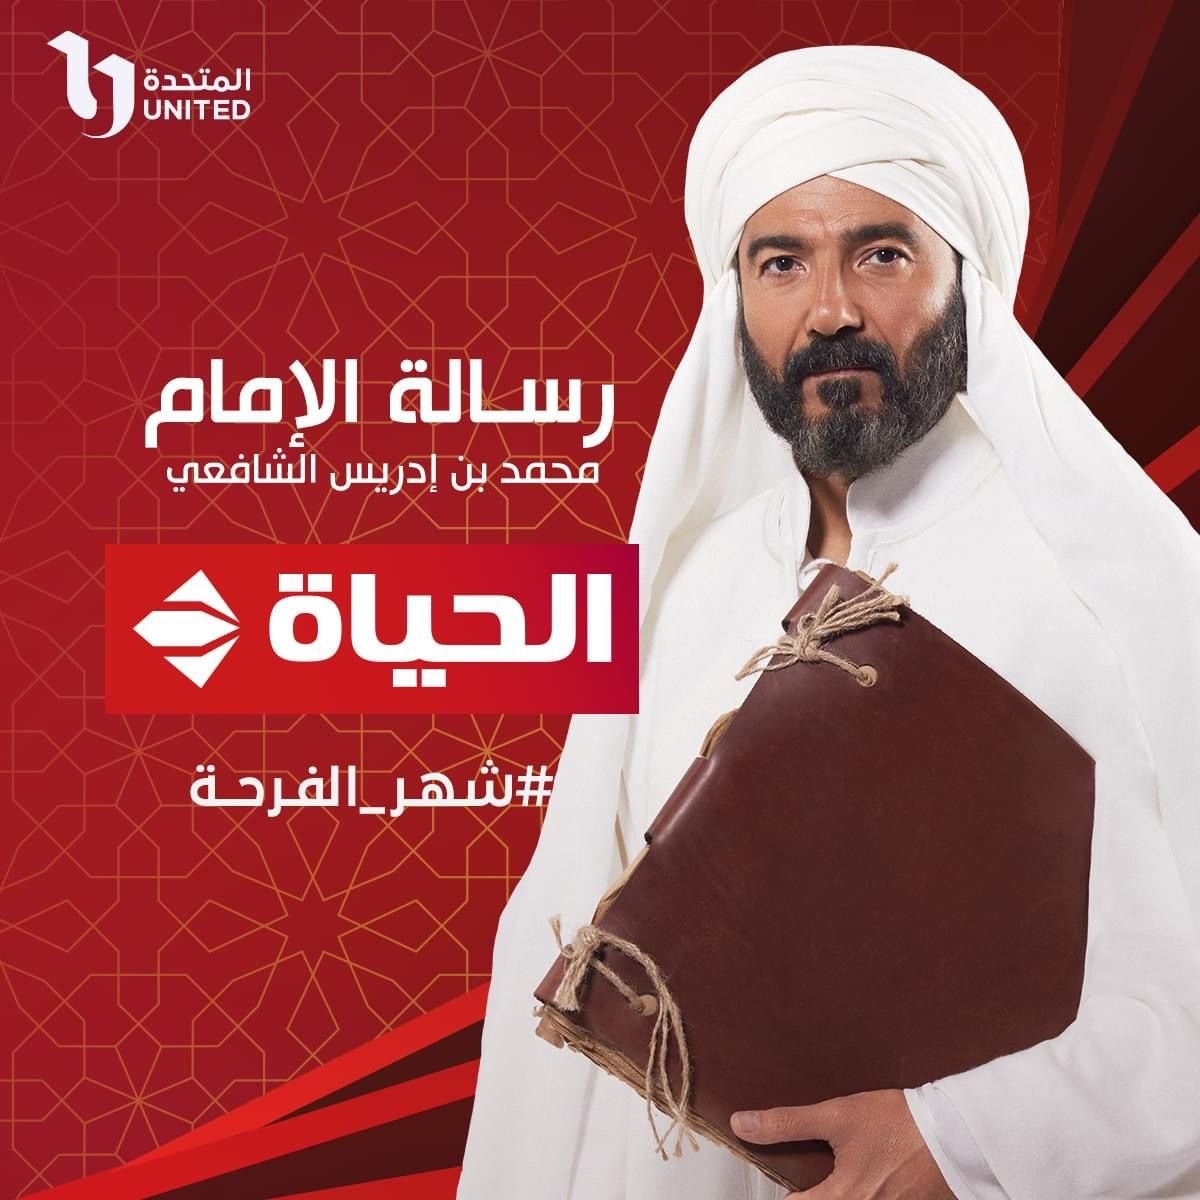 مشاهدة مسلسل رسالة الامام الحلقة 6 السادسة في رمضان 2023 على قناة cbc 